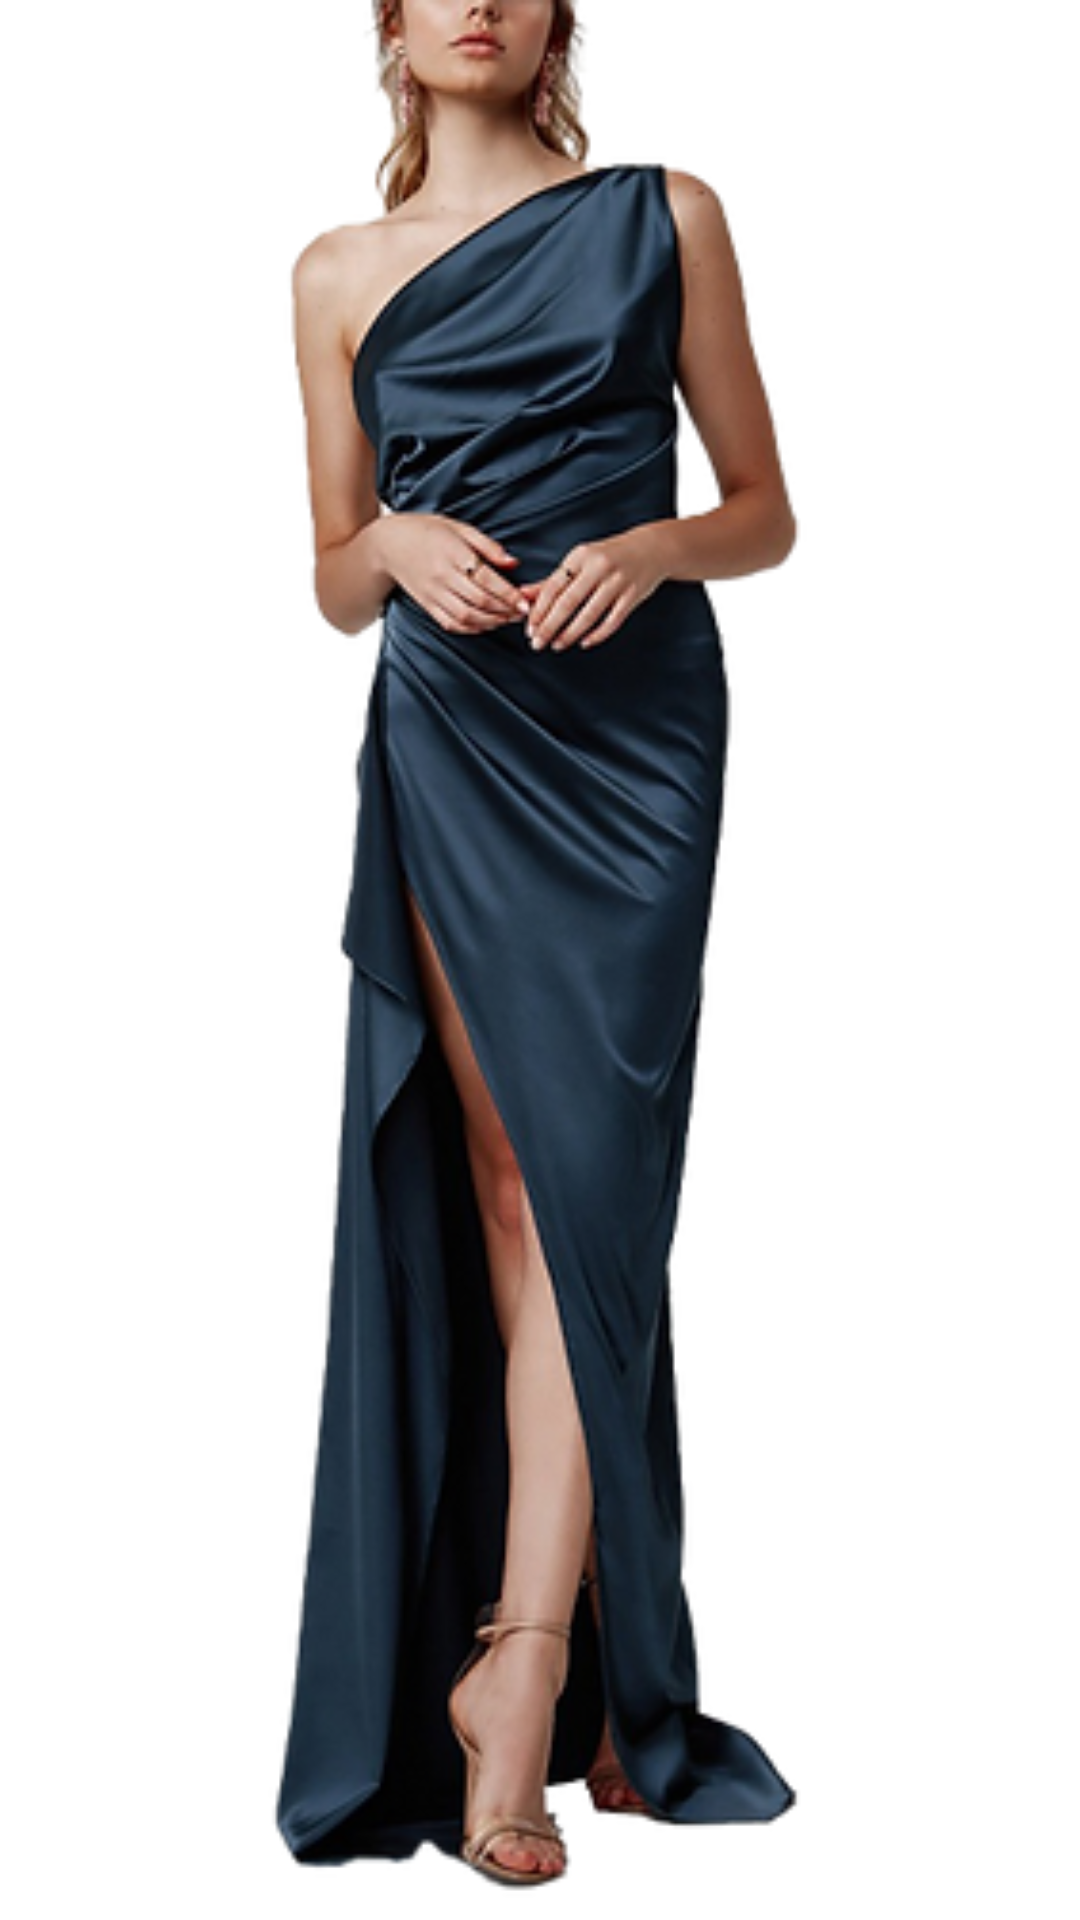 Lexi Samira One-Shoulder Dress in Orion Blue